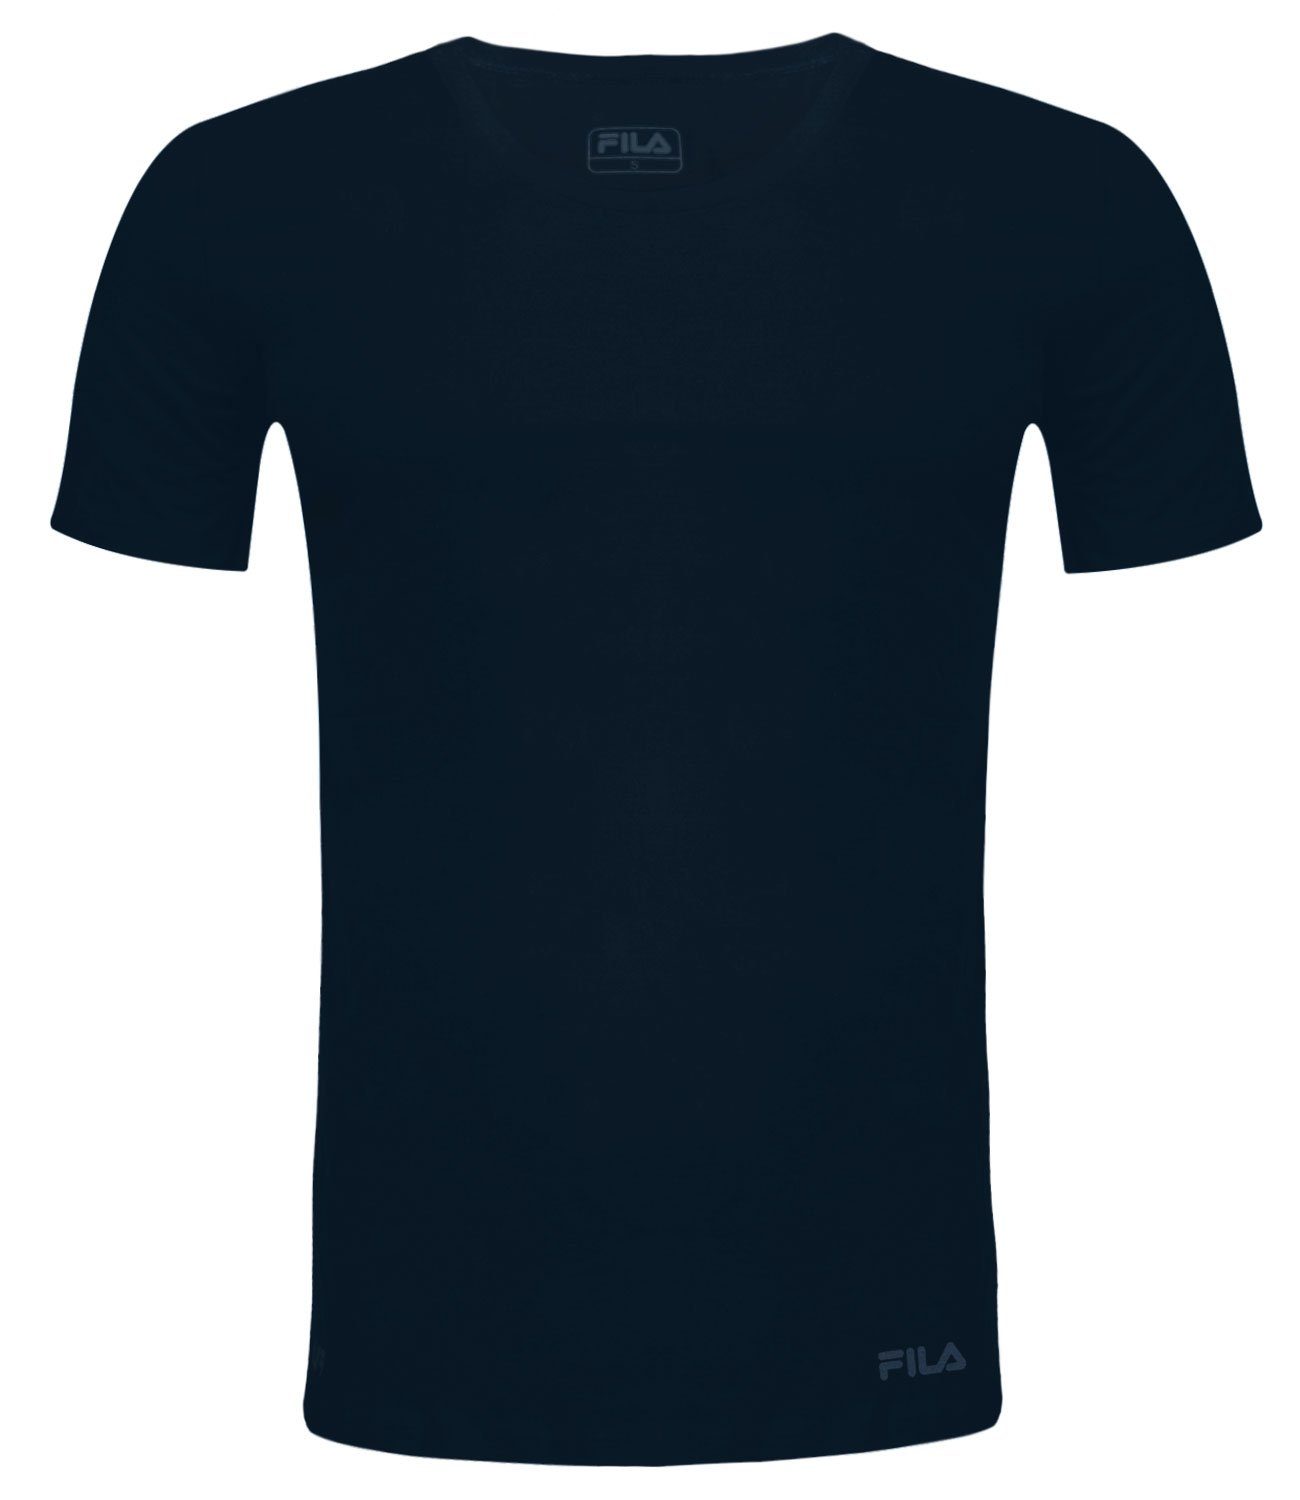 321 T-Shirt aus Round-Neck weichem navy Baumwolljersey Fila